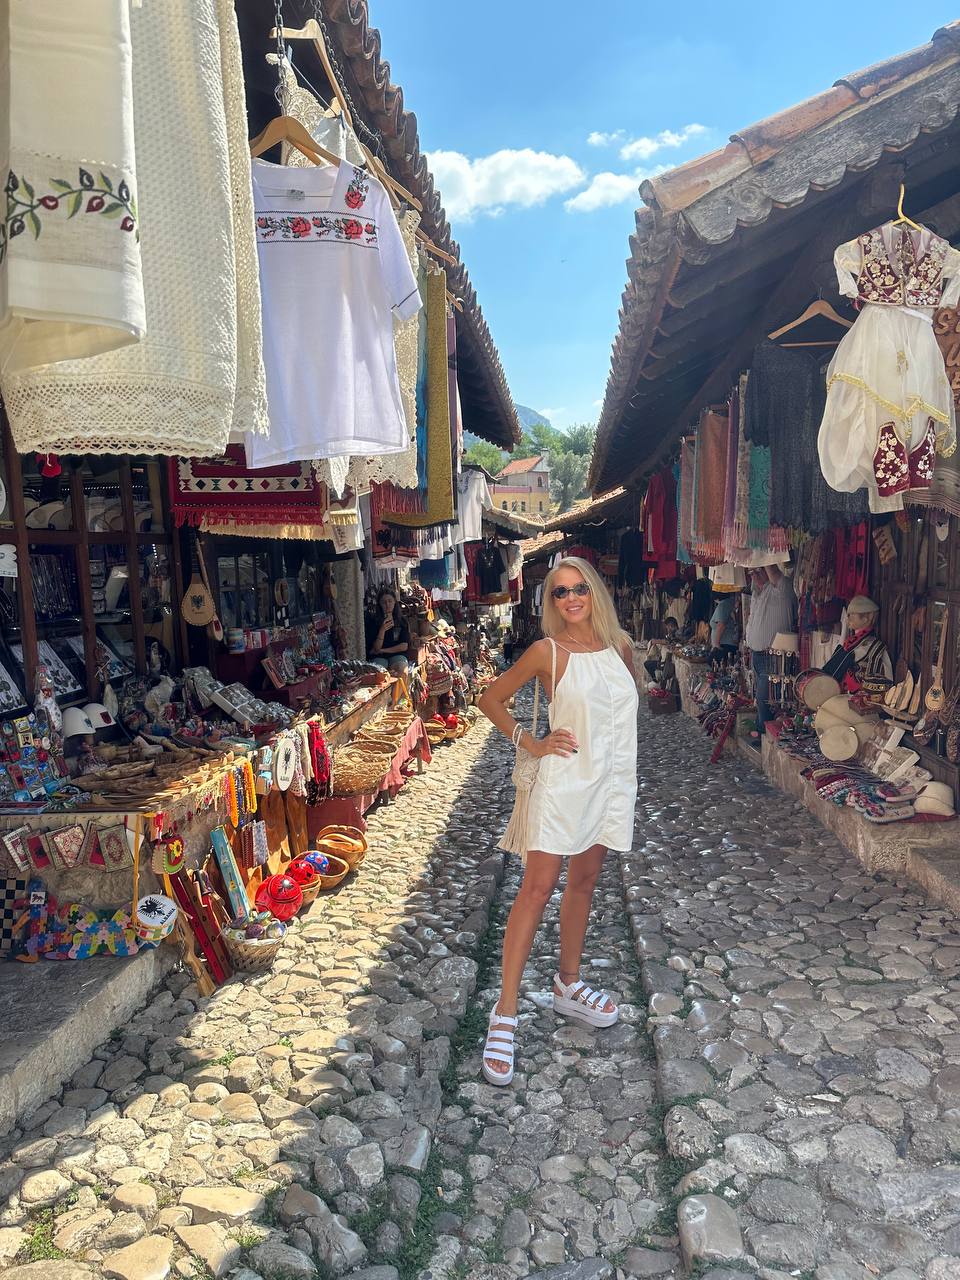 Городской рынок в Албании и девушка в белом платье.